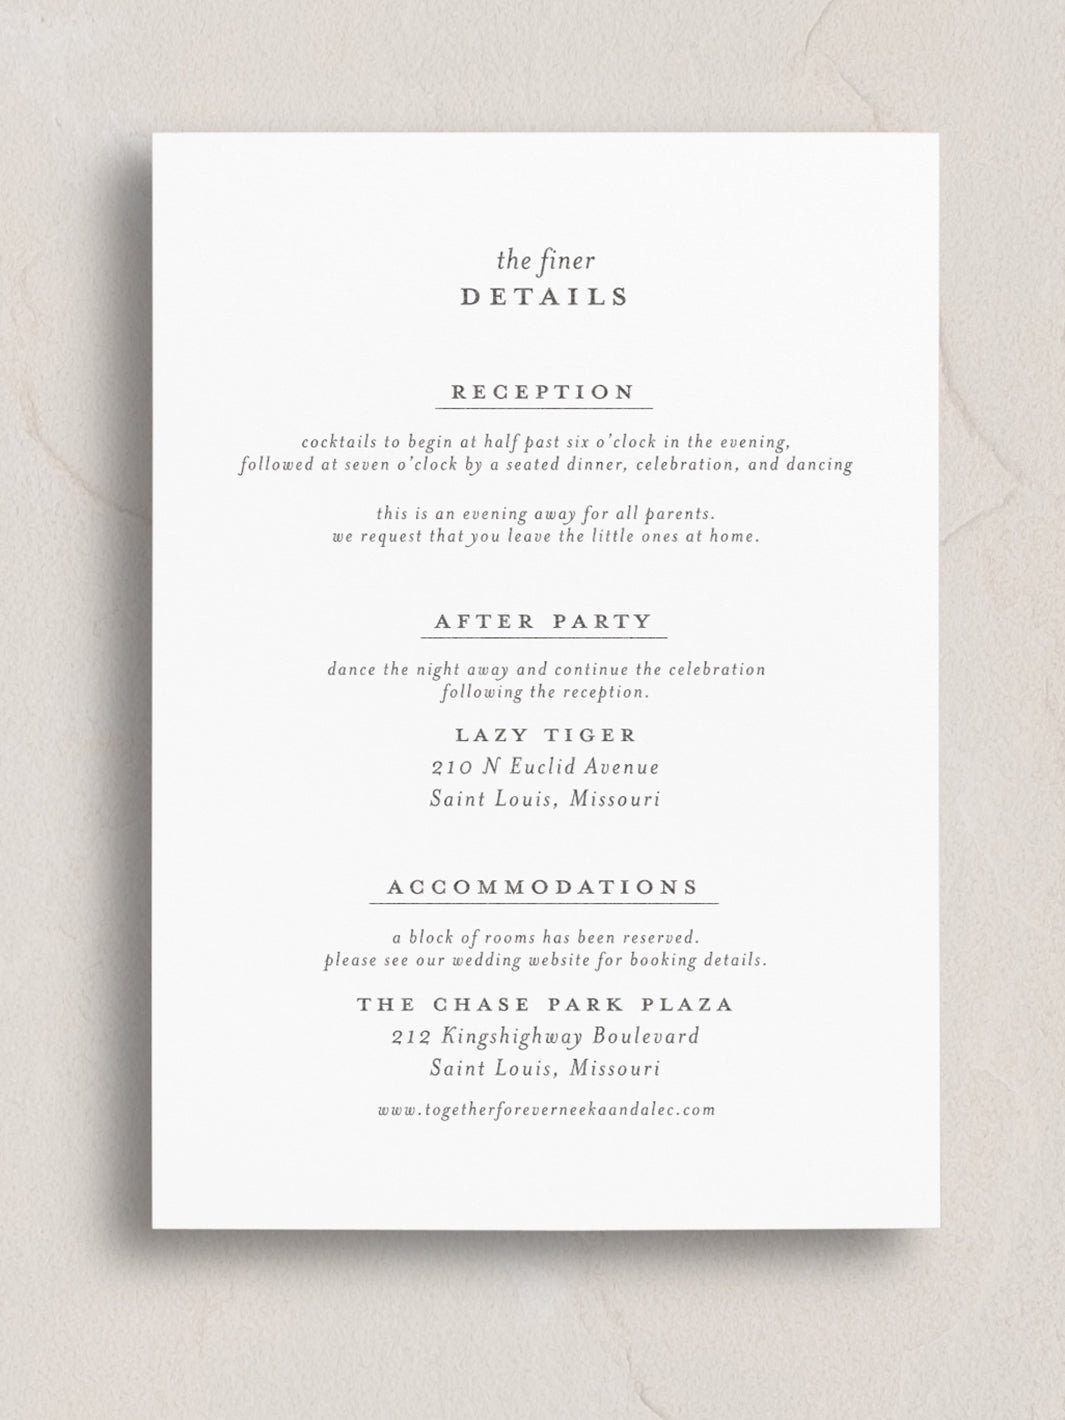 Neeka Semi-Custom Wedding Invitation Suite from Leighwood Design Studio